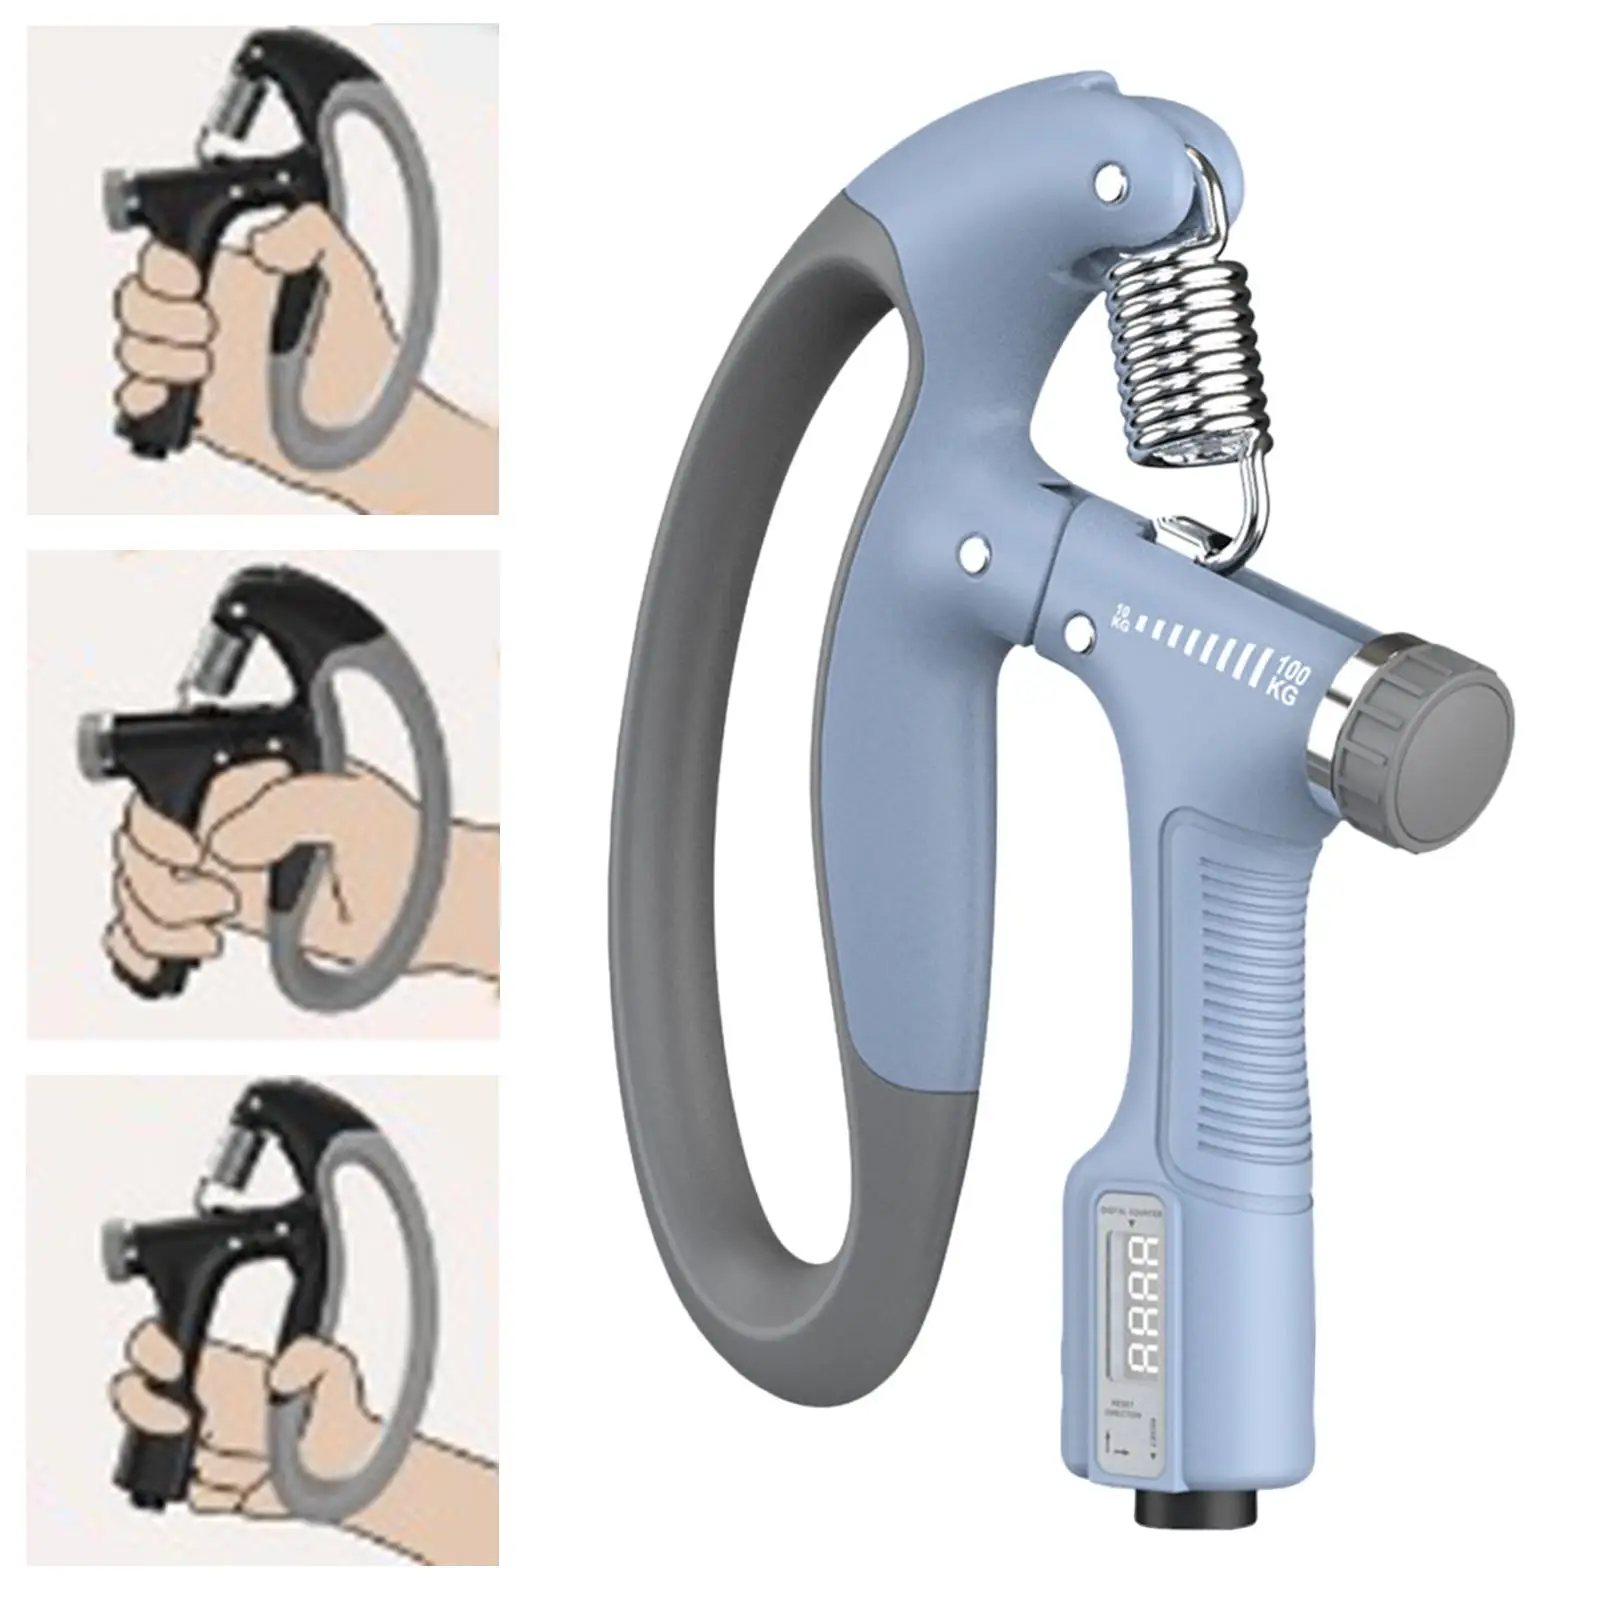 Hand grip trainer, non-slip finger stretcher, forearm trainer, heavier